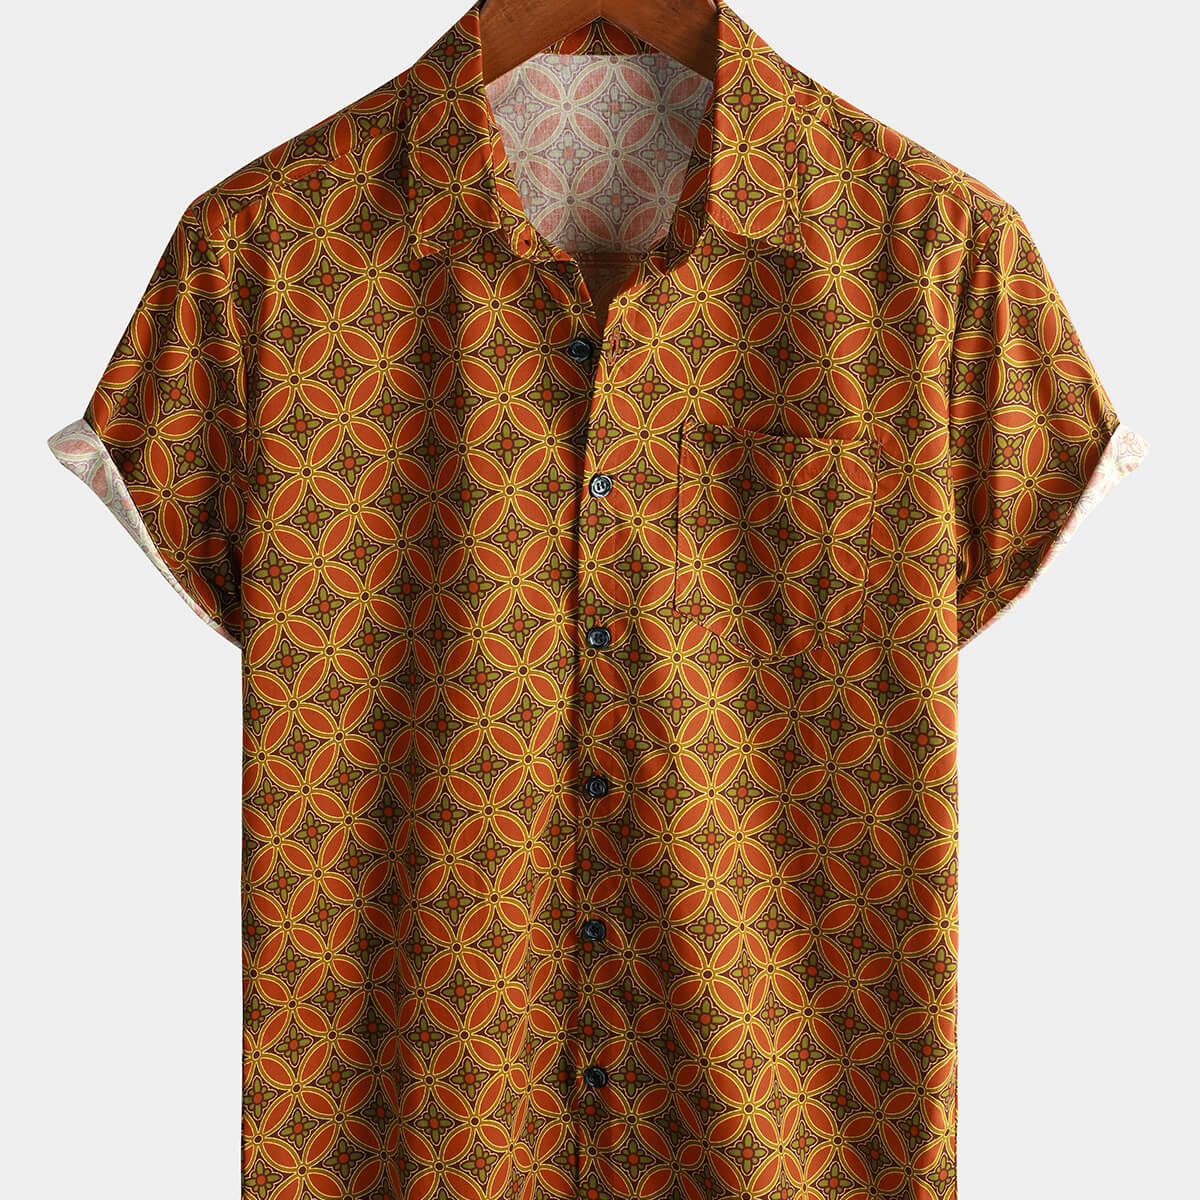 Men's Vintage Floral Cotton Short Sleeve Button Shirt